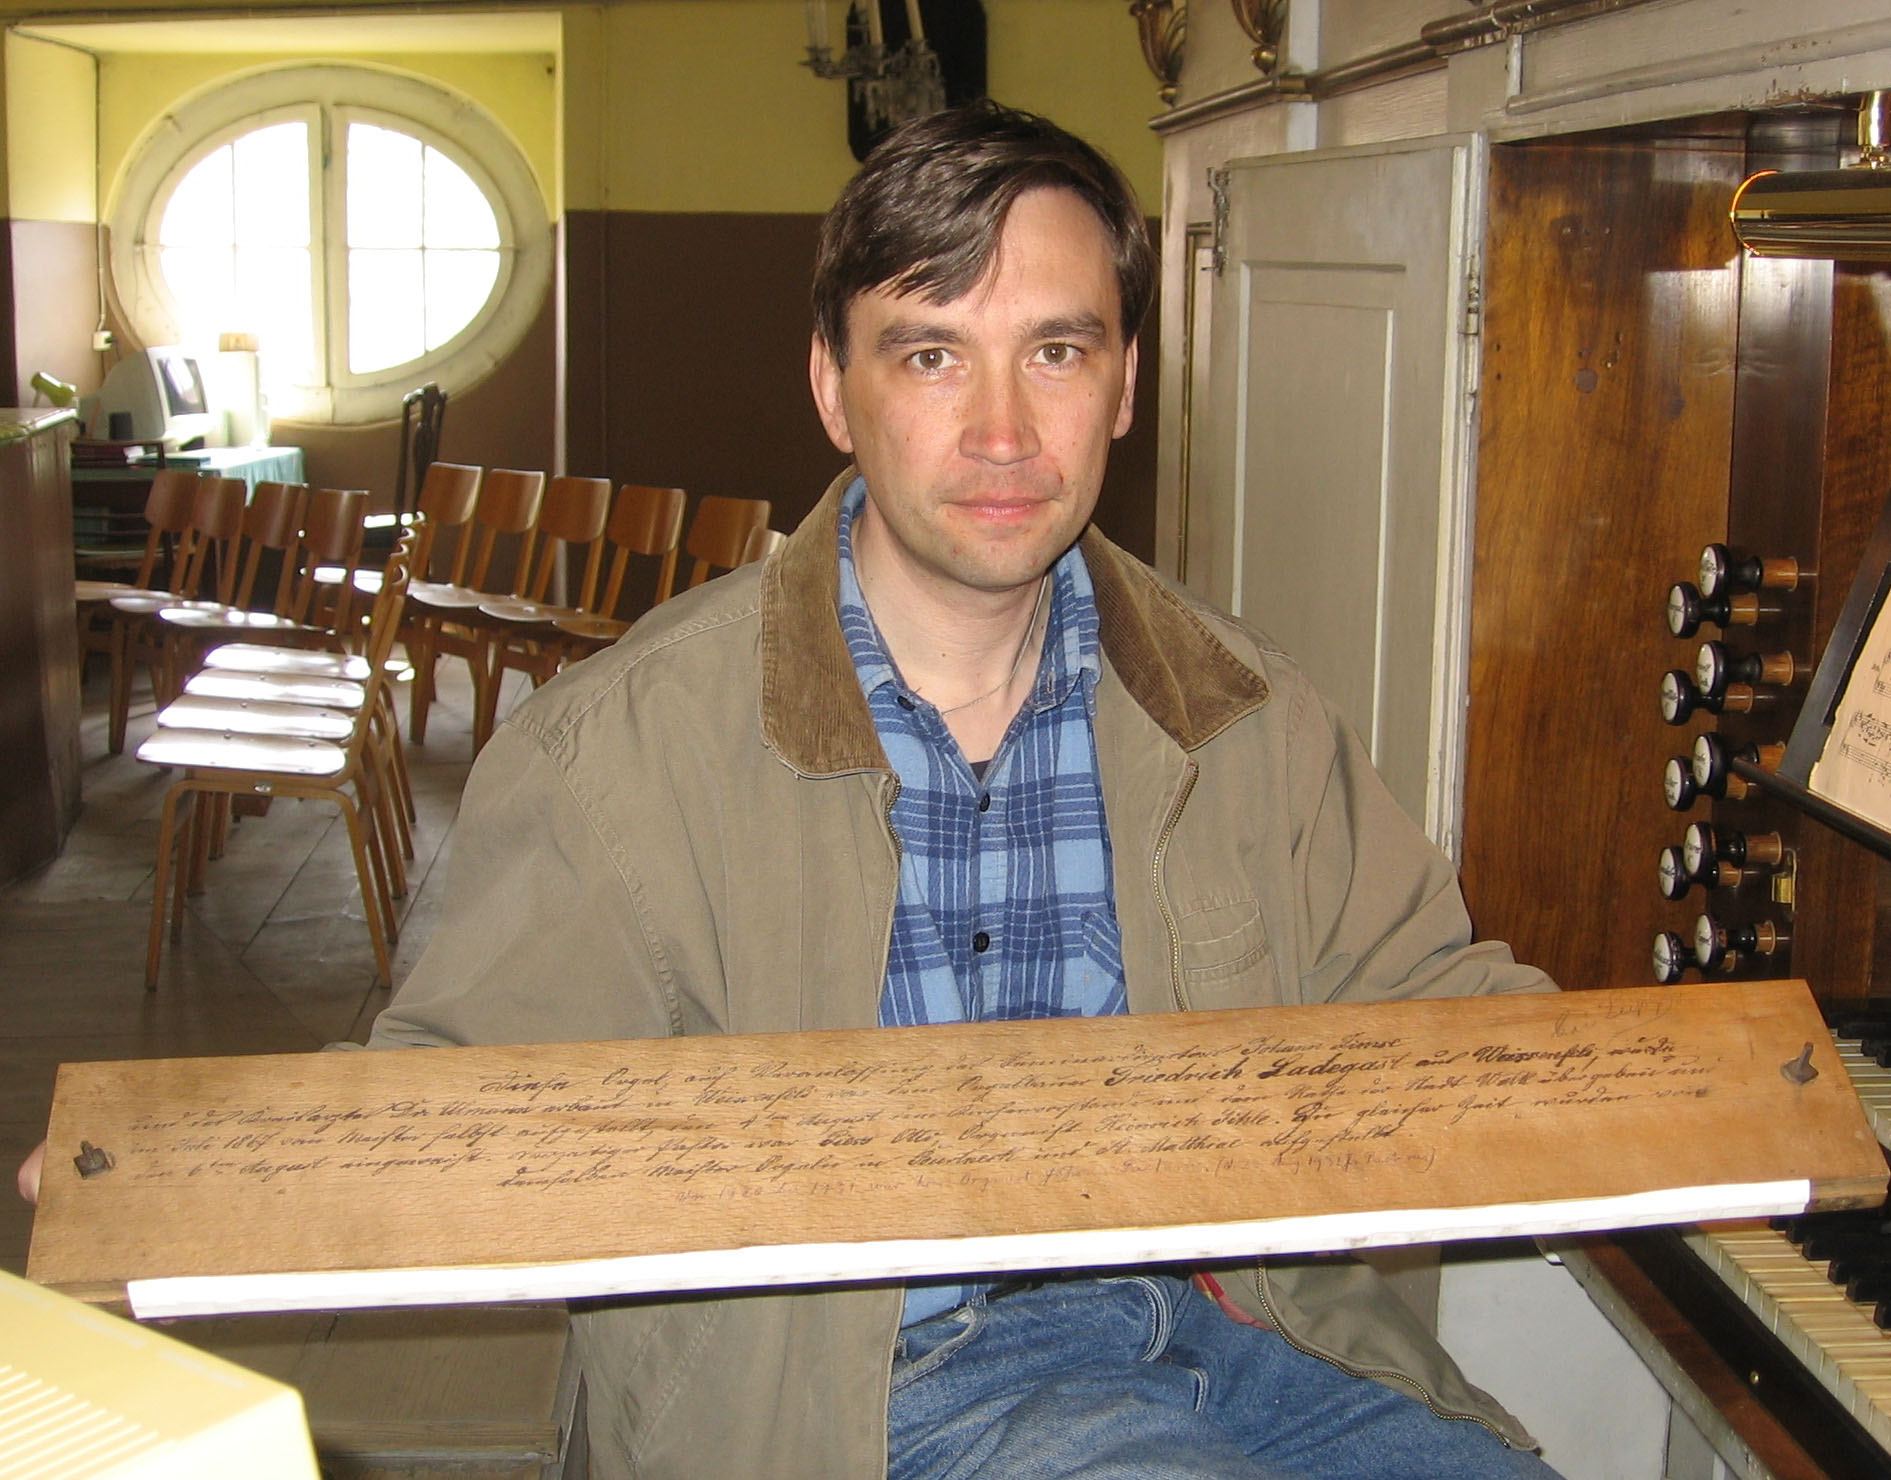 Orelilauale on meister Ladegast oma käega initsiaalid kirjutanud. Selgitust jagab organist Jüri Goltsov.